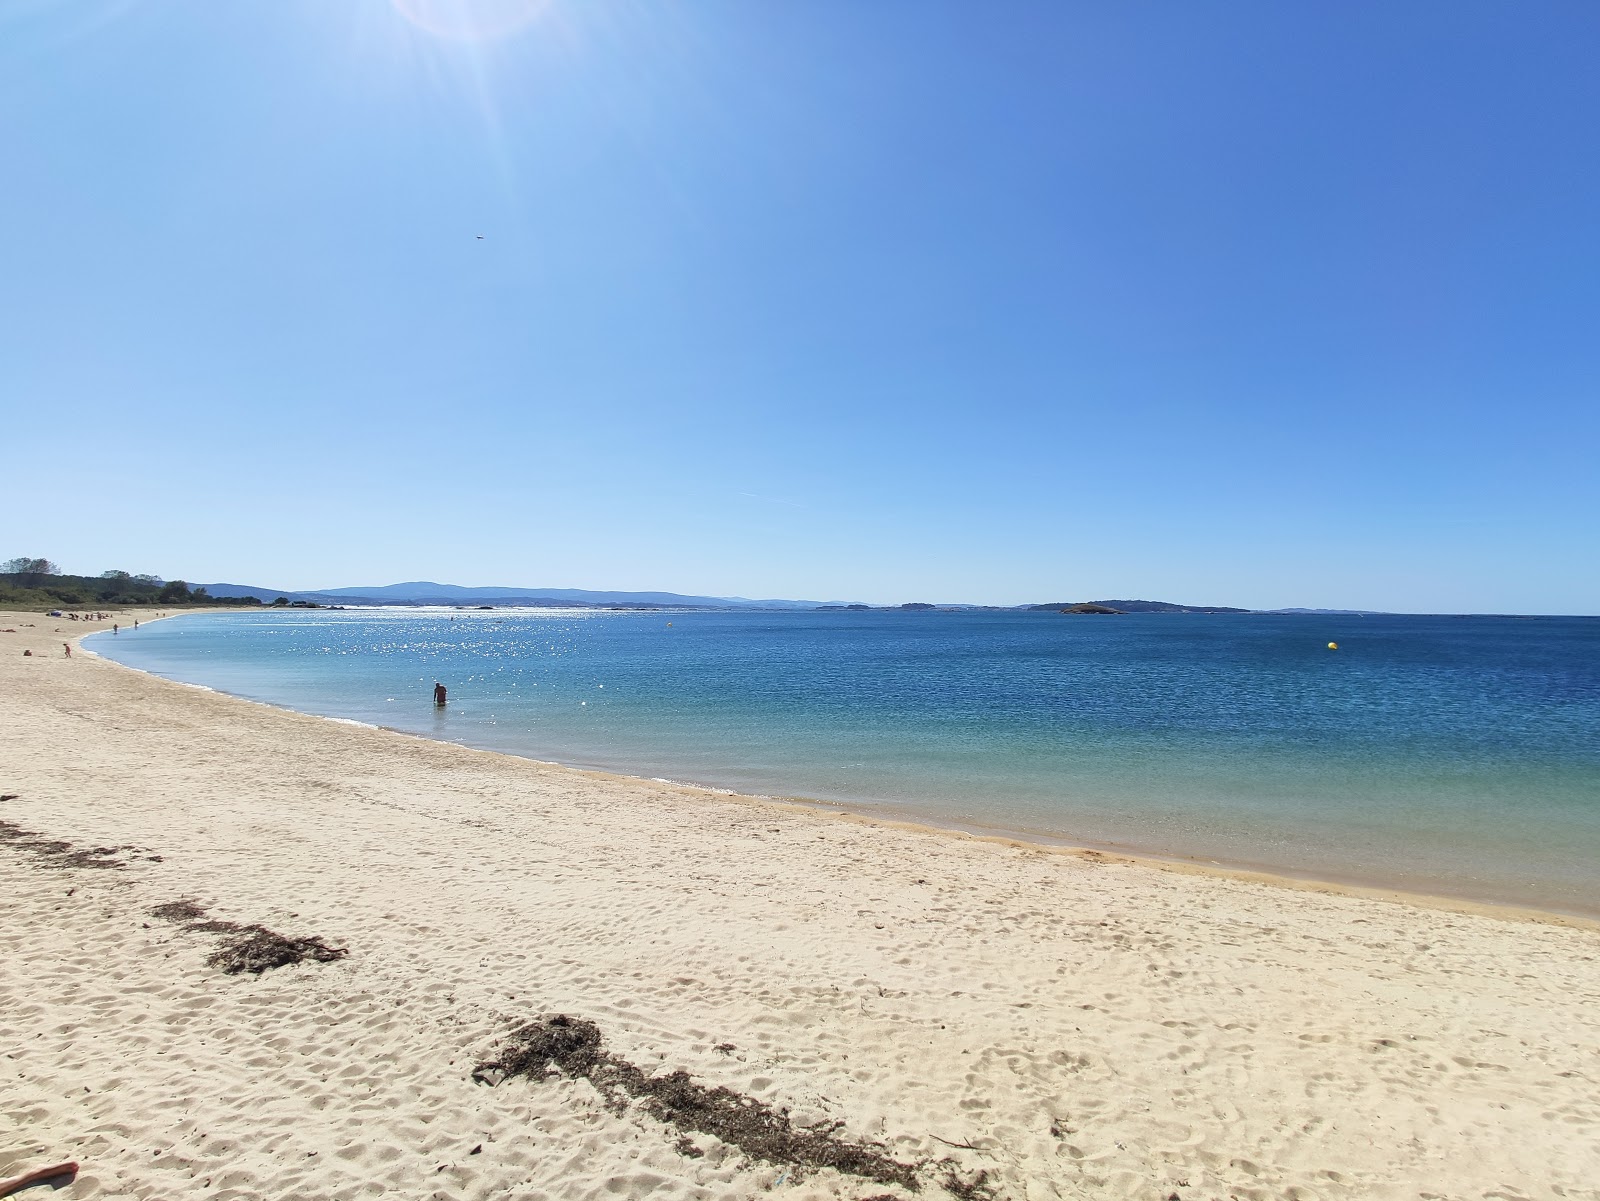 Carragueiros beach'in fotoğrafı hafif ince çakıl taş yüzey ile